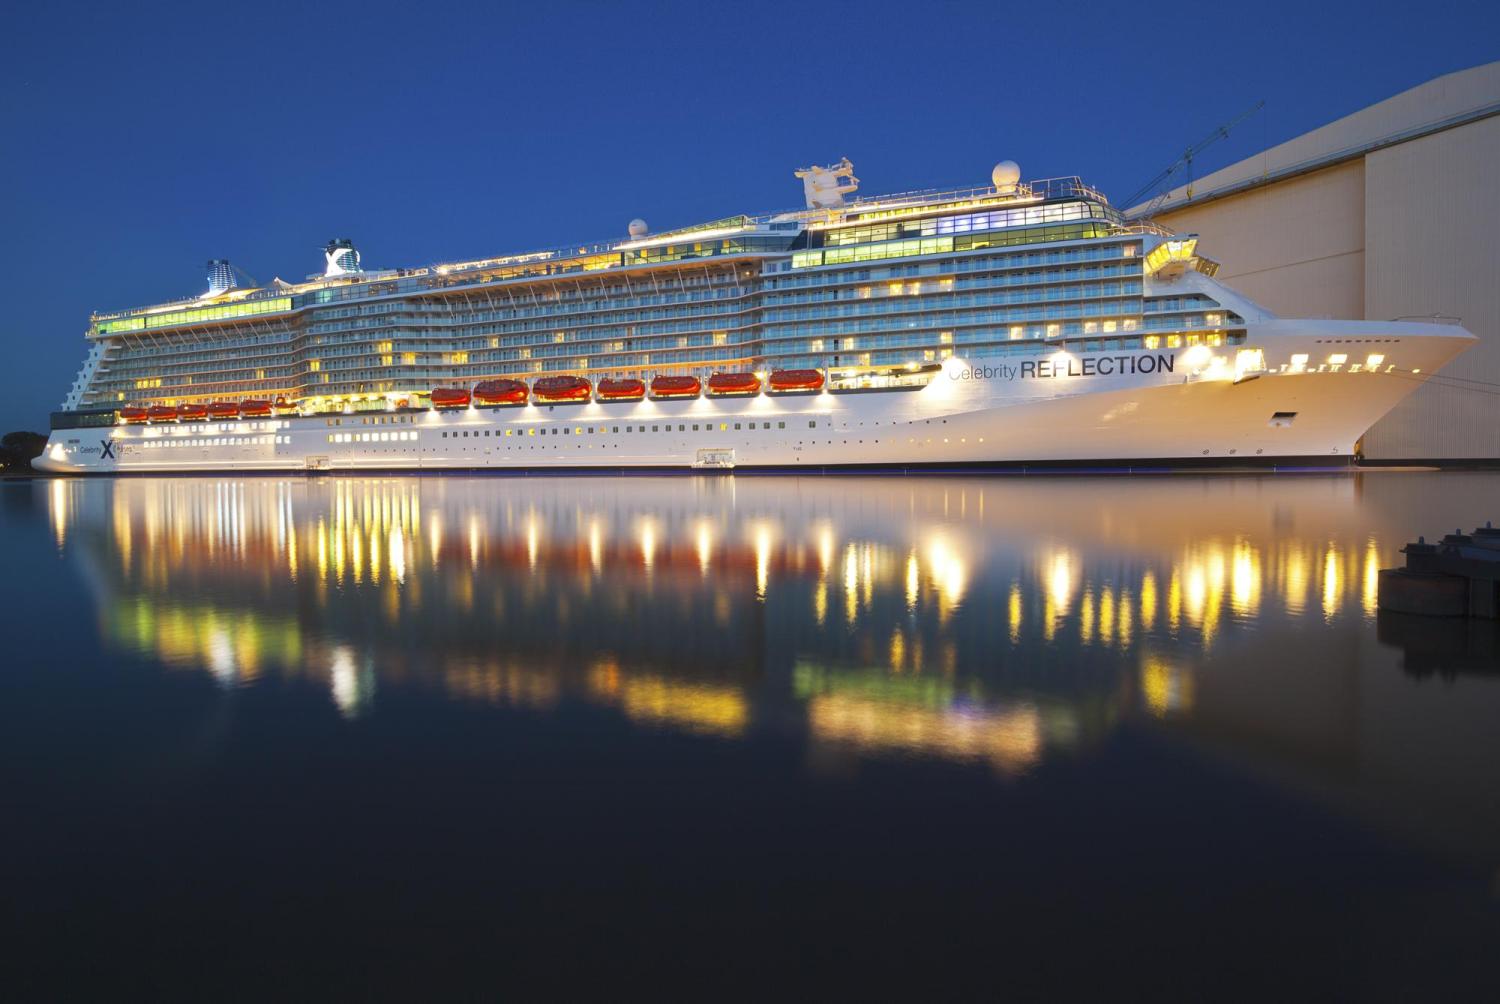 Celebrity Reflection entra ufficialmente nella flotta Celebrity Cruise